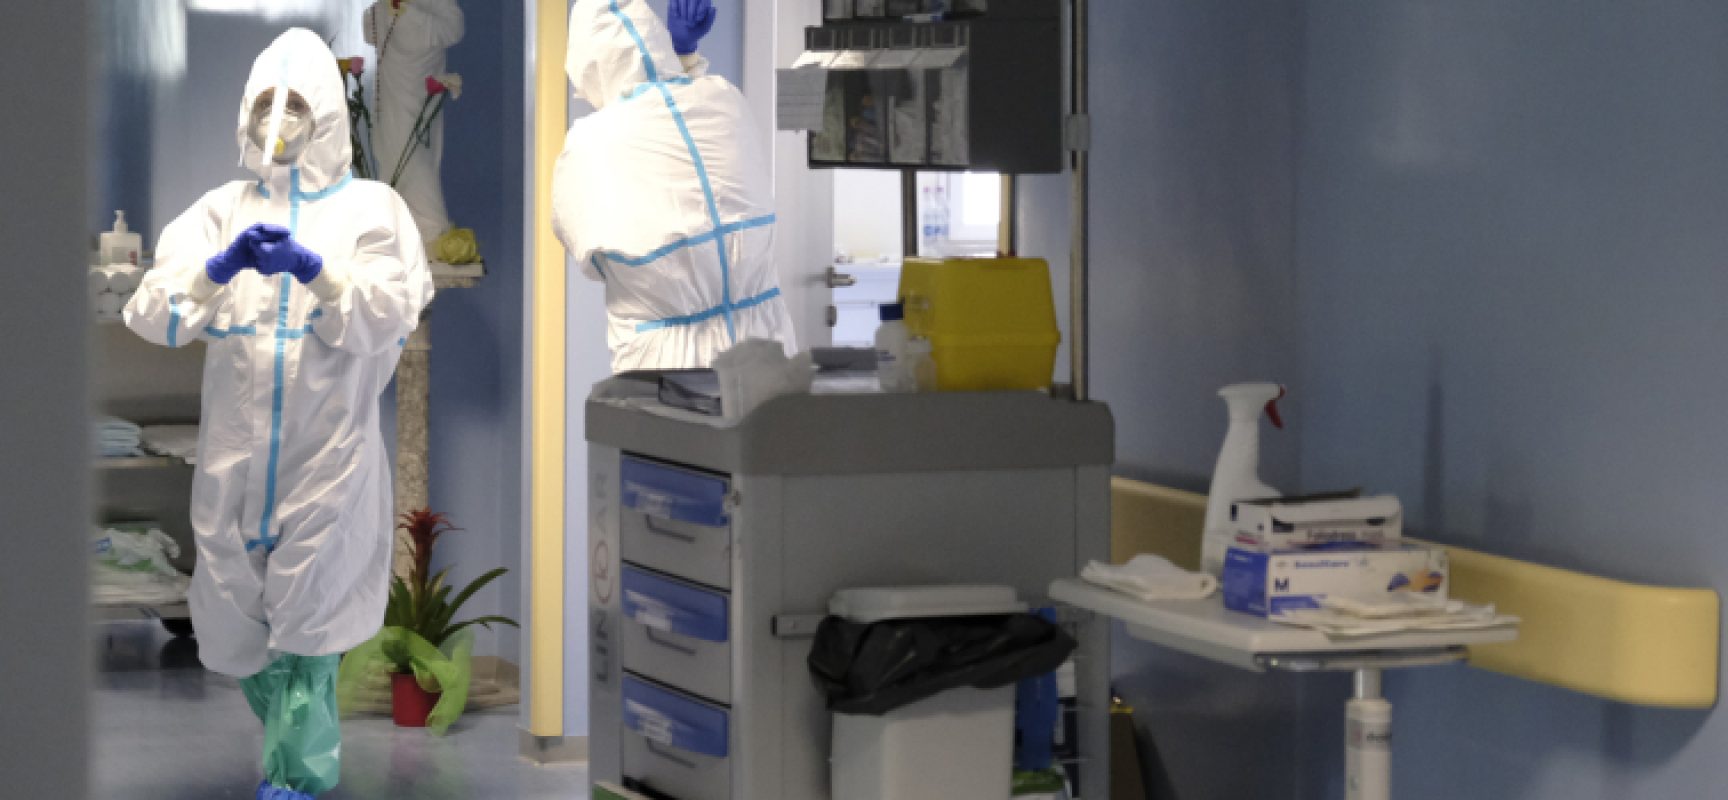 Coronavirus: bollettino giornaliero con 22 nuovi casi positivi in Puglia